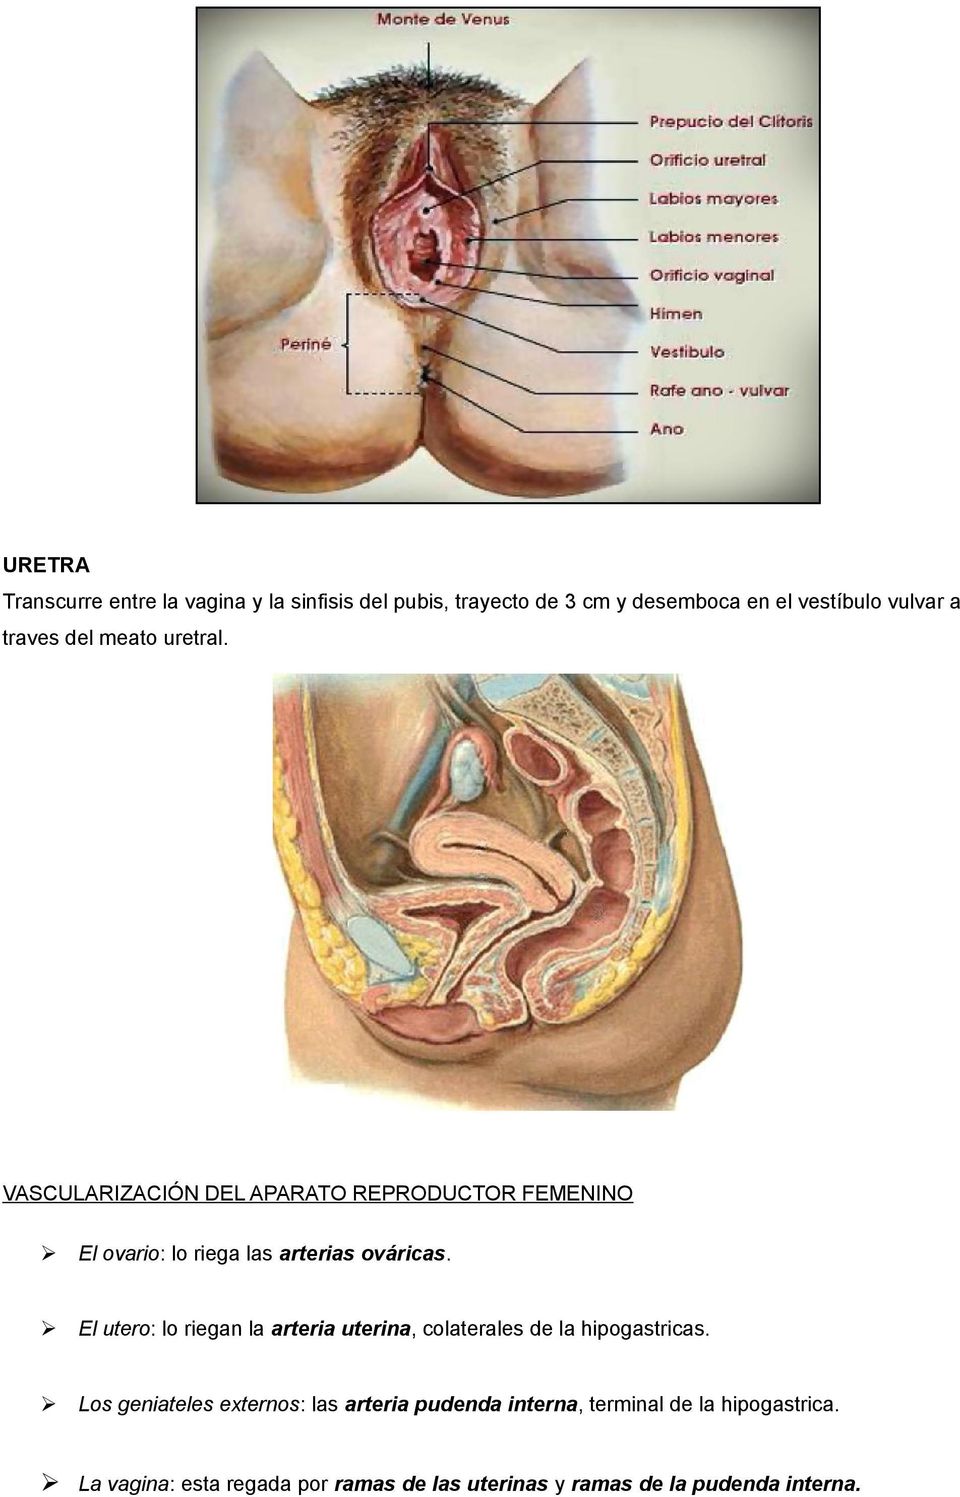 El utero: lo riegan la arteria uterina, colaterales de la hipogastricas.